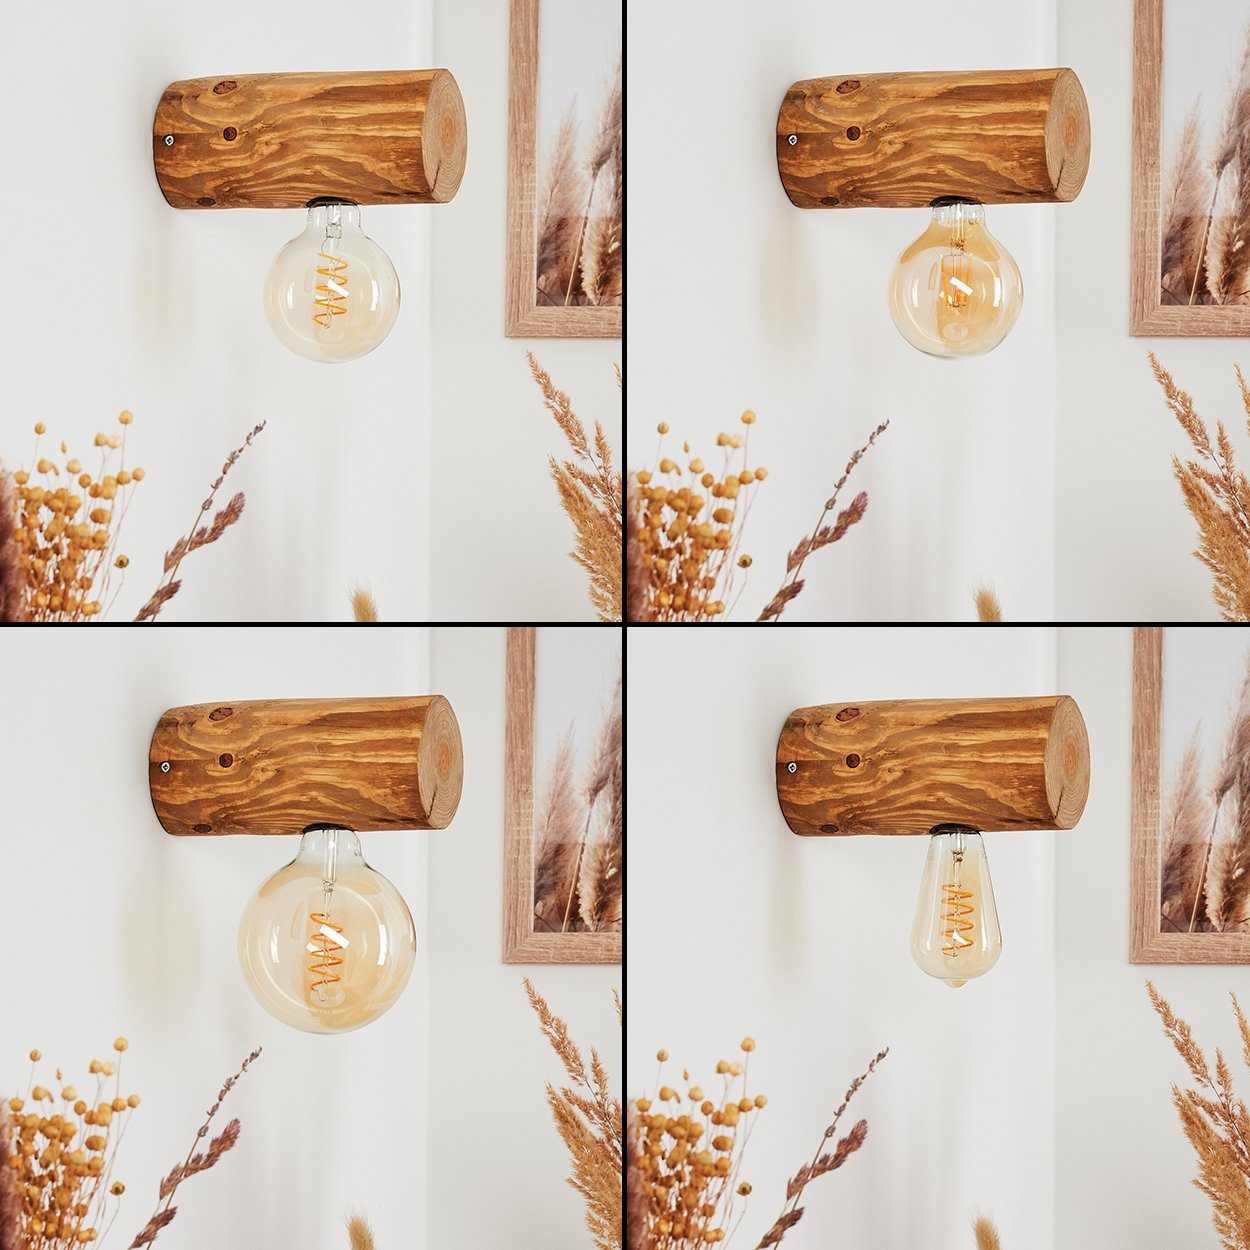 m. 1xE27, Dunkelbraun, hofstein Wandspot Lichteffekt ohne Leuchtmittel, »Pontinvrea« in Wandlampe im Holz Retro/Vintage Außen-Wandleuchte Design aus